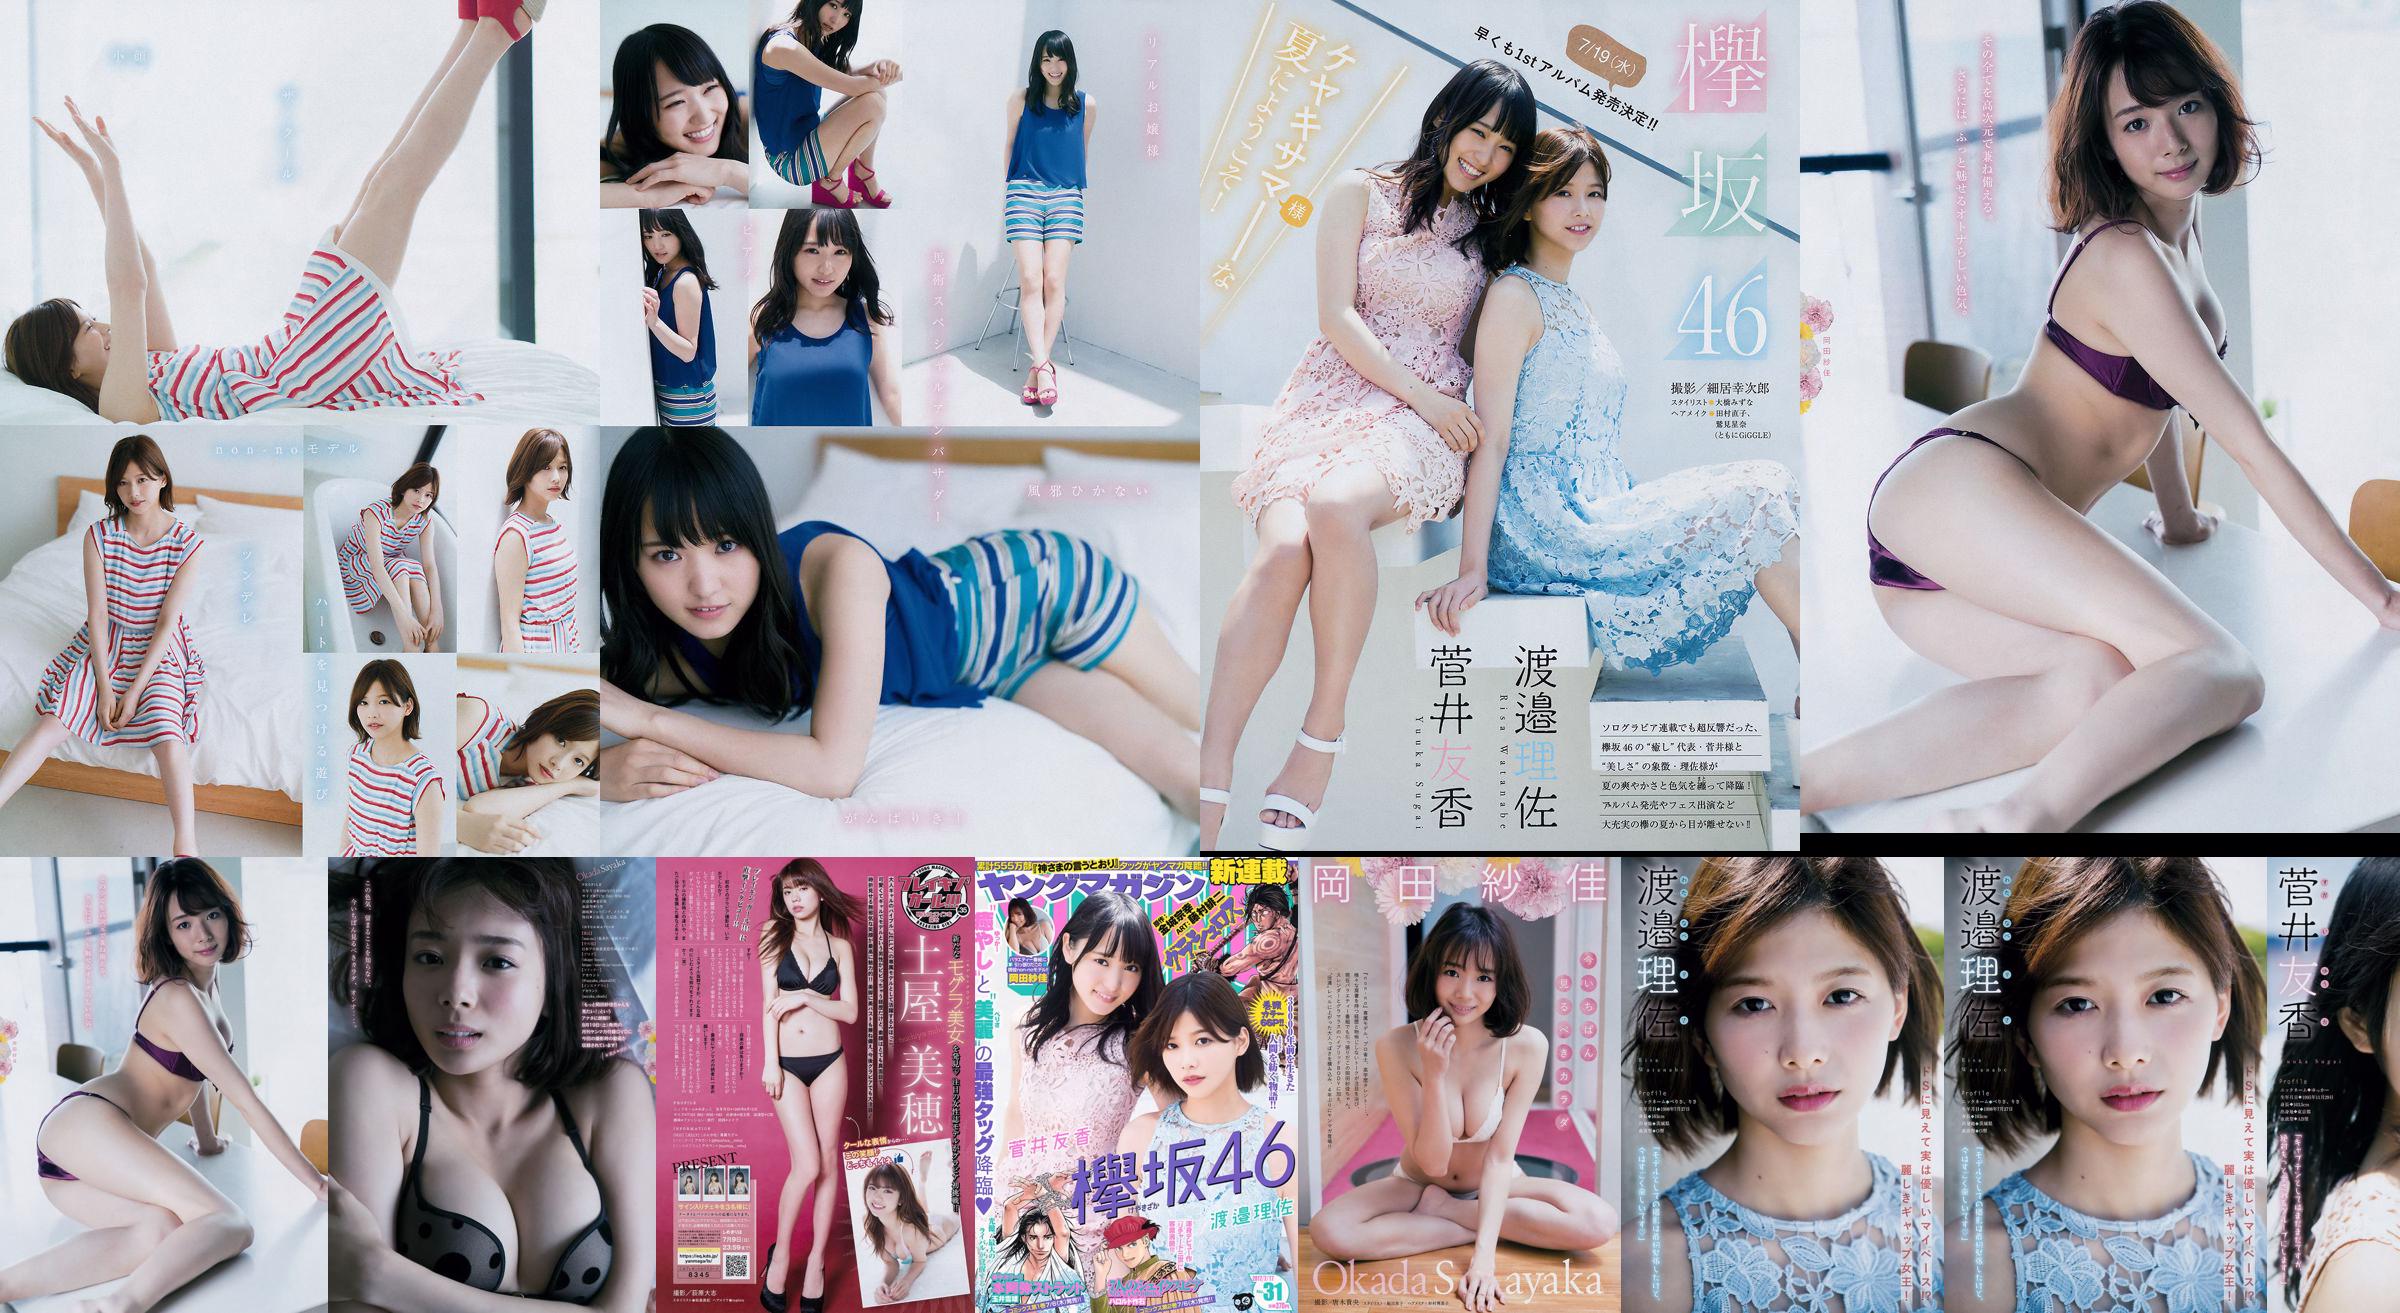 [Young Magazine] Watanabe Risa, Sugai Yuka, Okada Saika 2017 No.31 Photo Magazine No.63beec Page 1